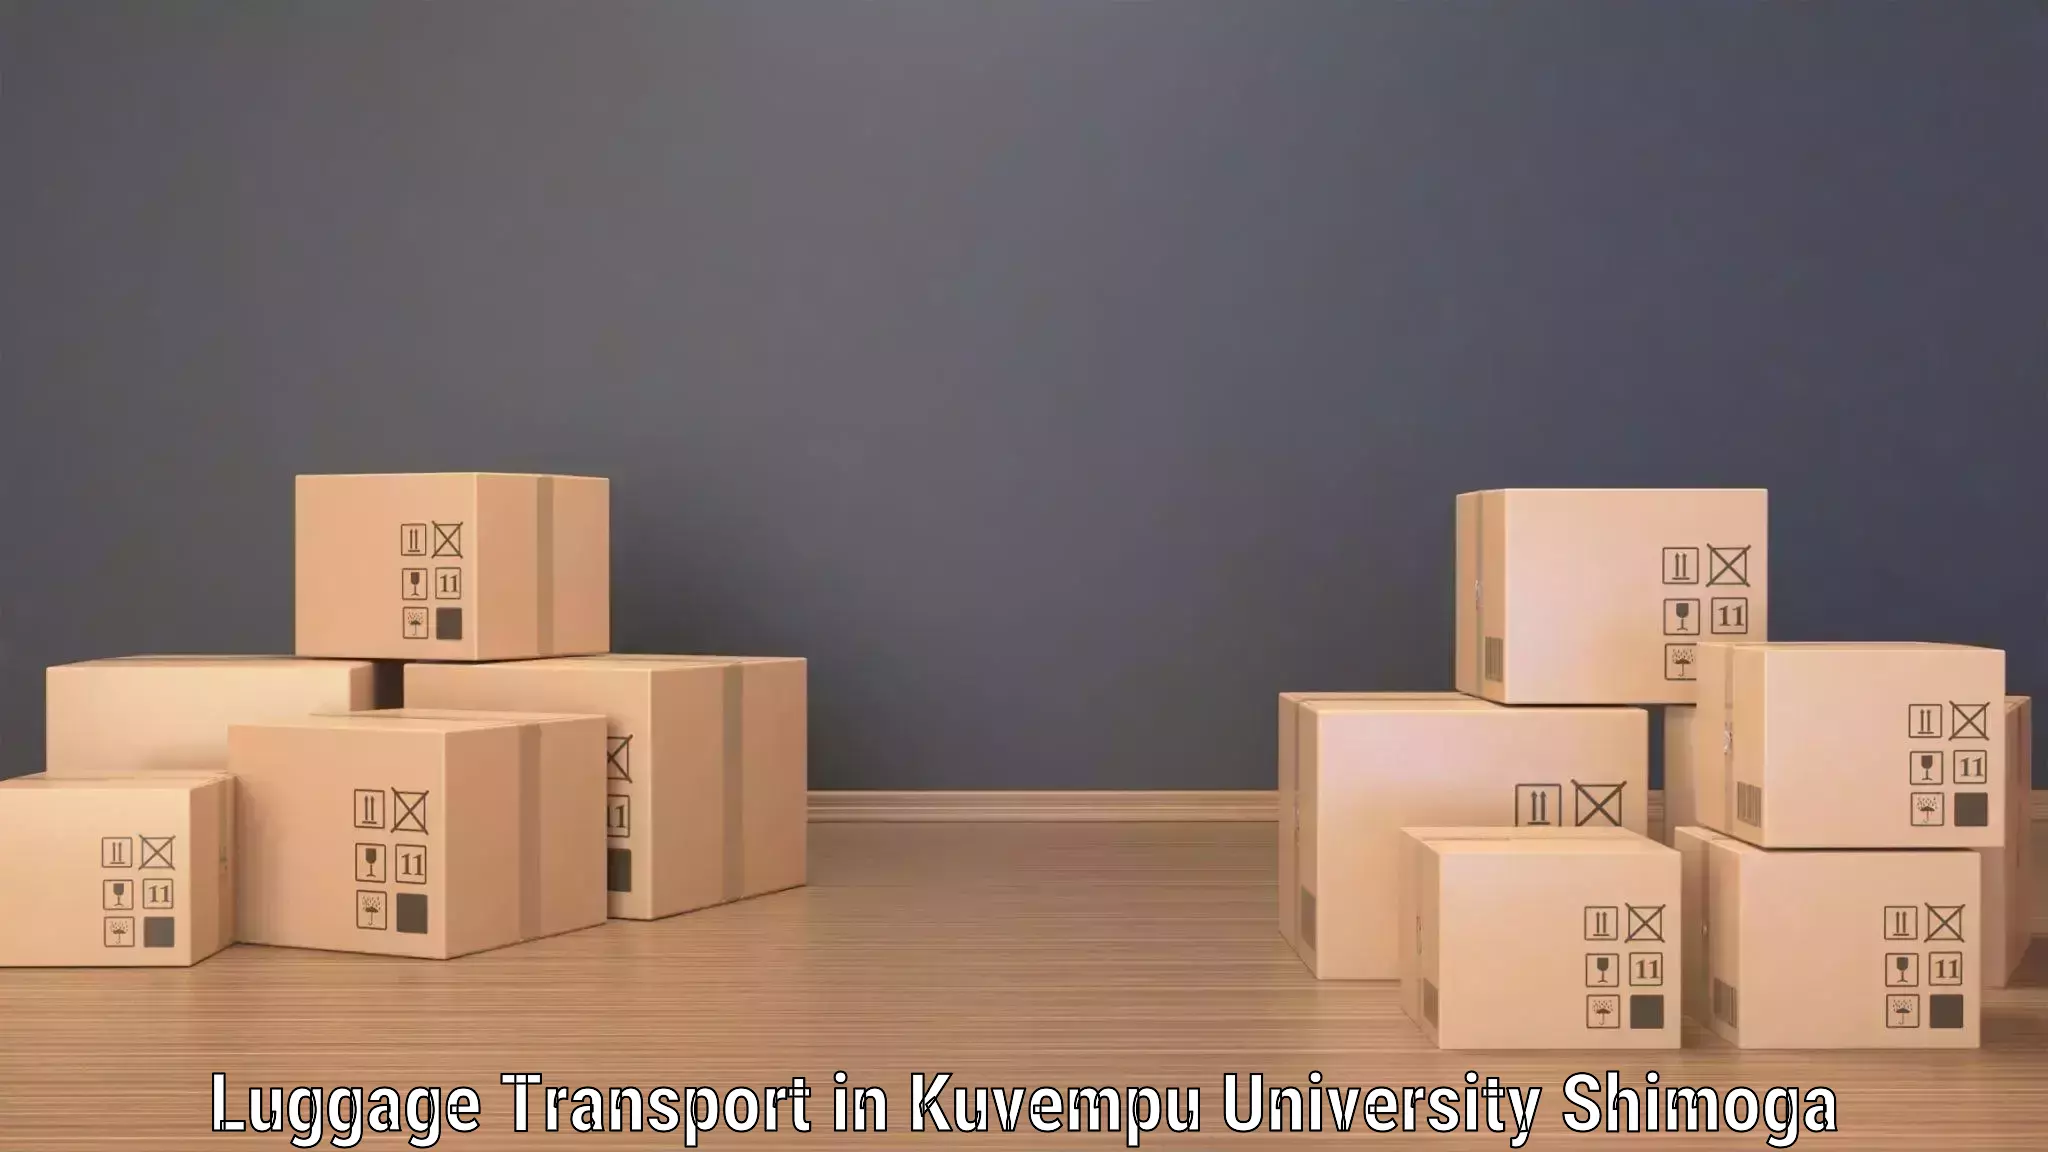 Luggage transport pricing in Kuvempu University Shimoga